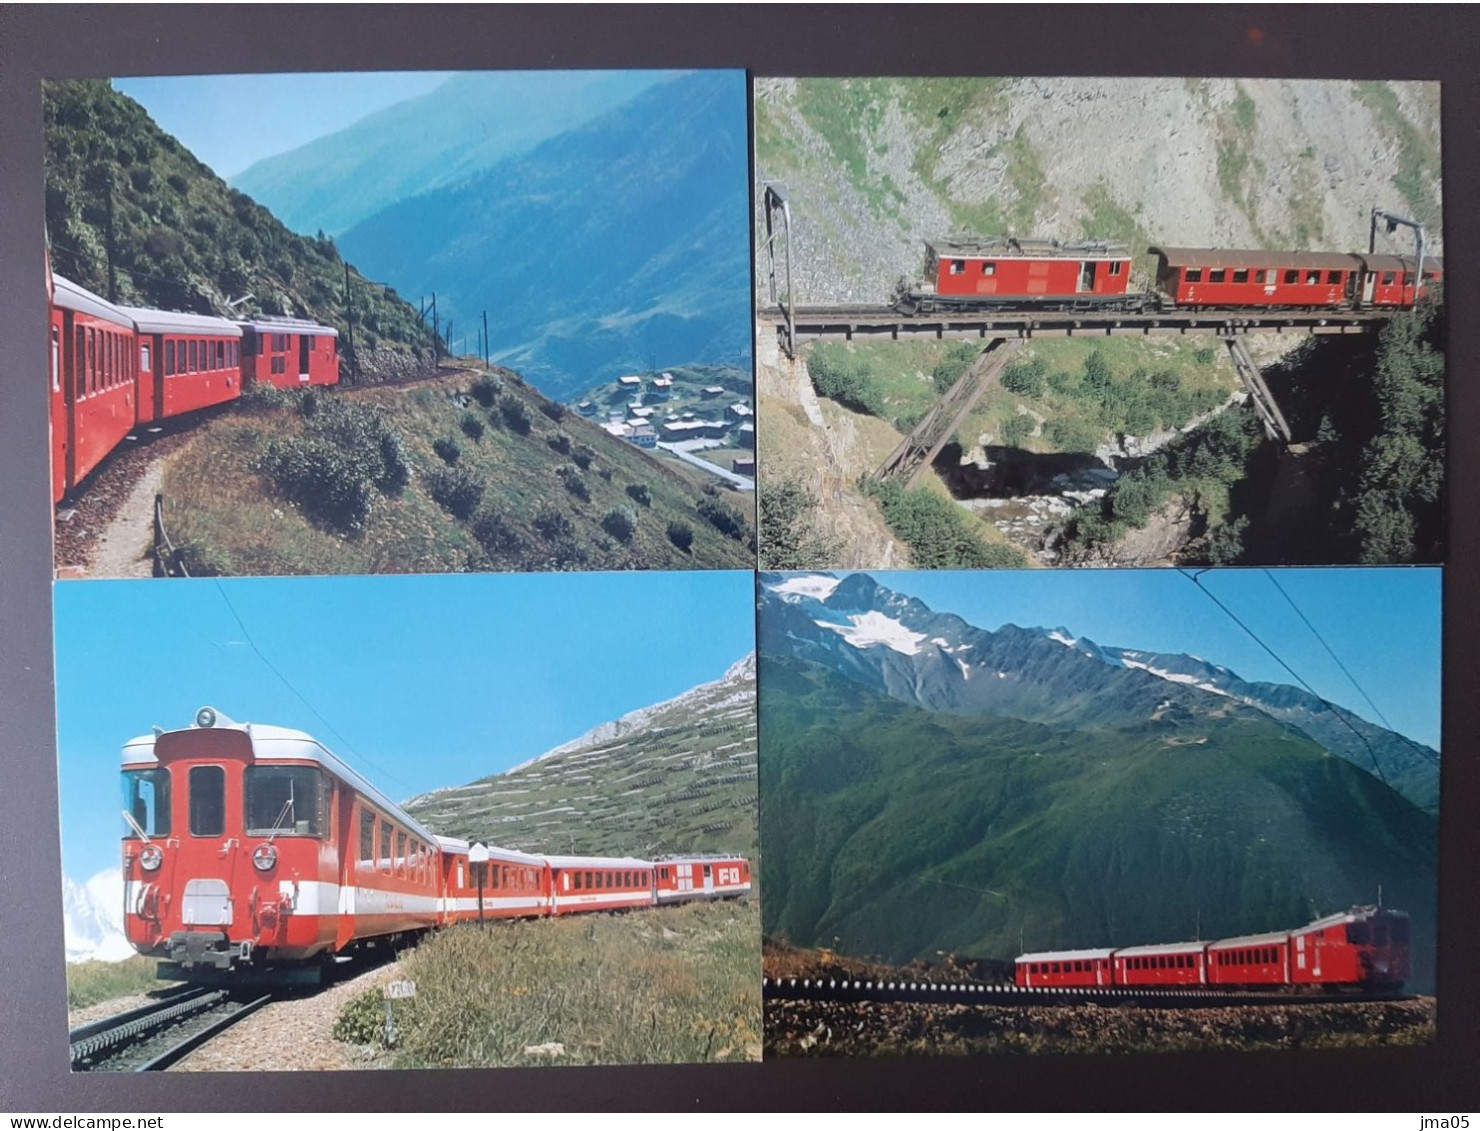 Lot de 130 cartes de Train - Locomotive - Train électrique - Motrice - Chemin de fer fédéraux de Suisse SBB CFF (05)